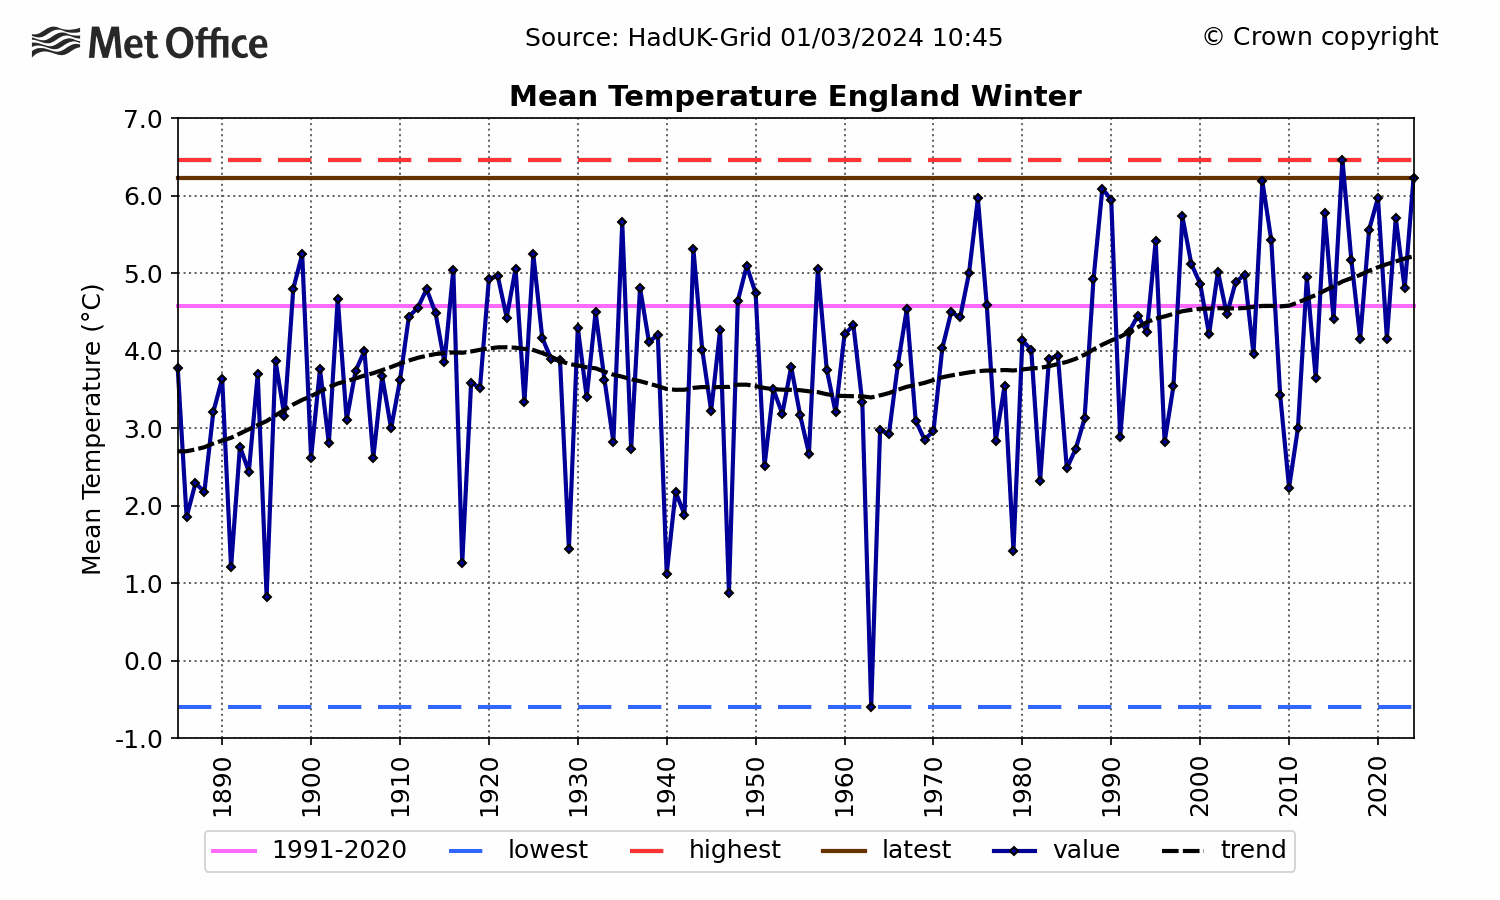 England Mean temperature - Winter